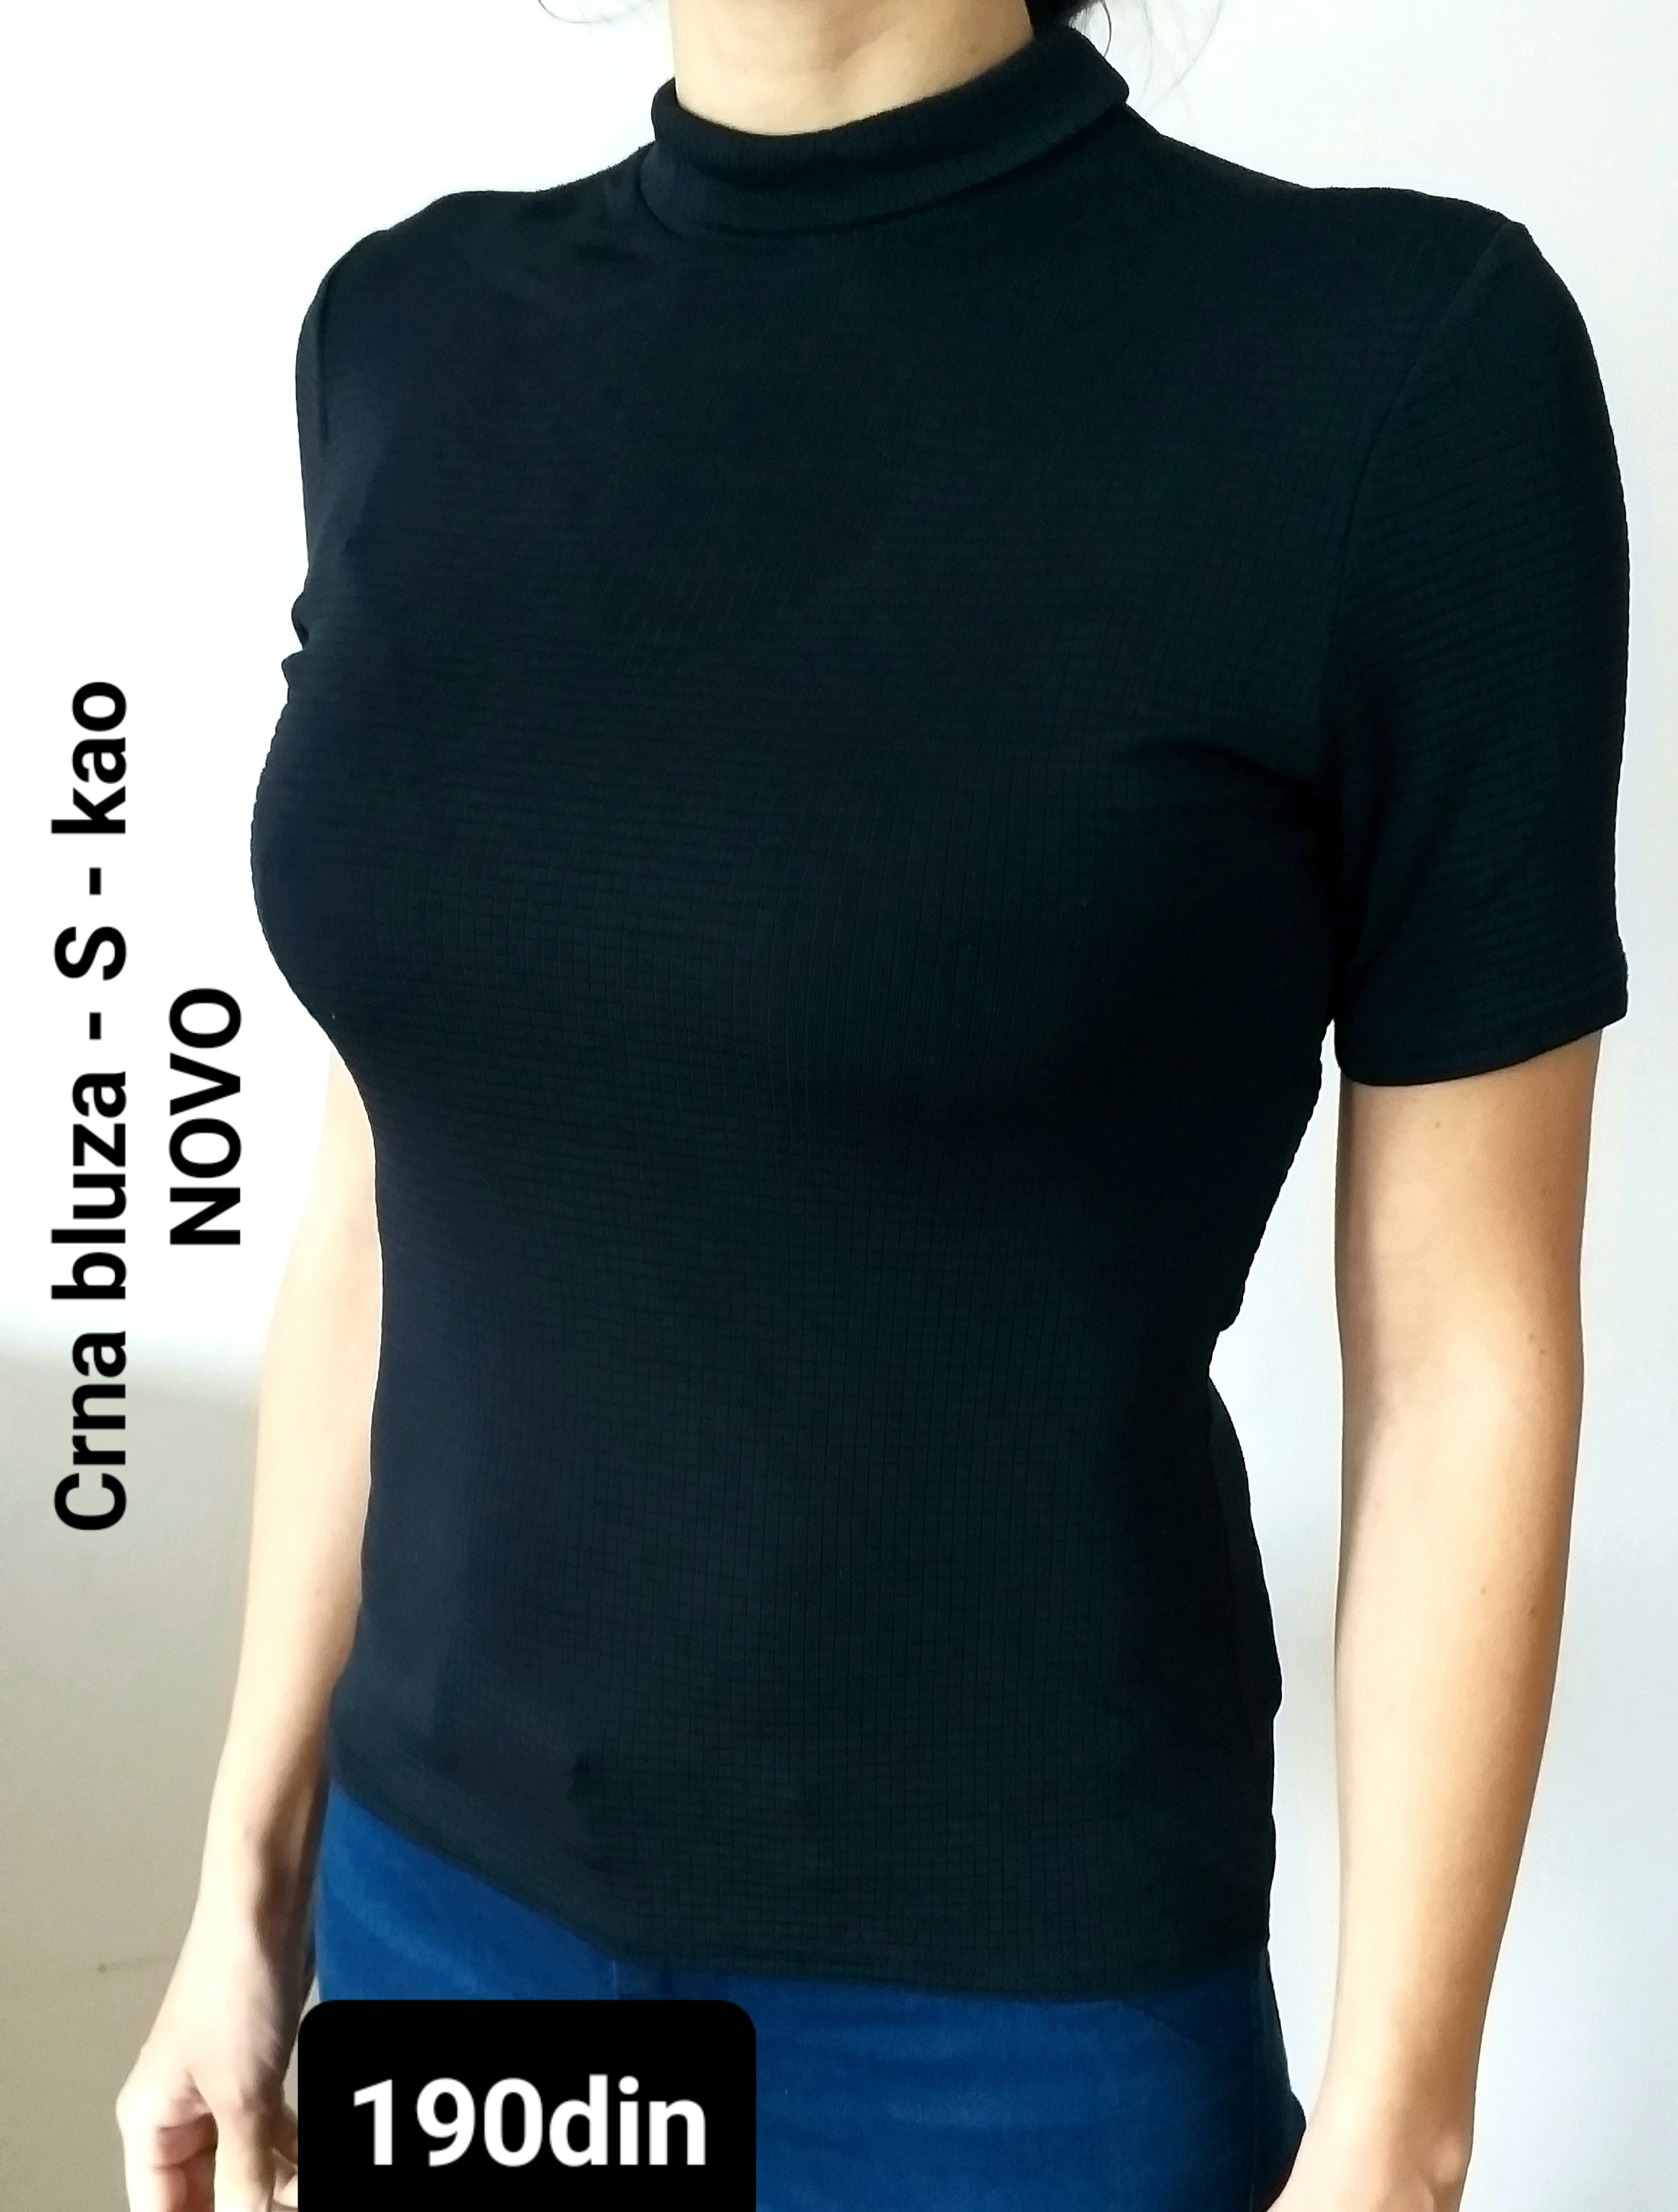 Ženska bluza rolka crna S/36 - kao NOVO